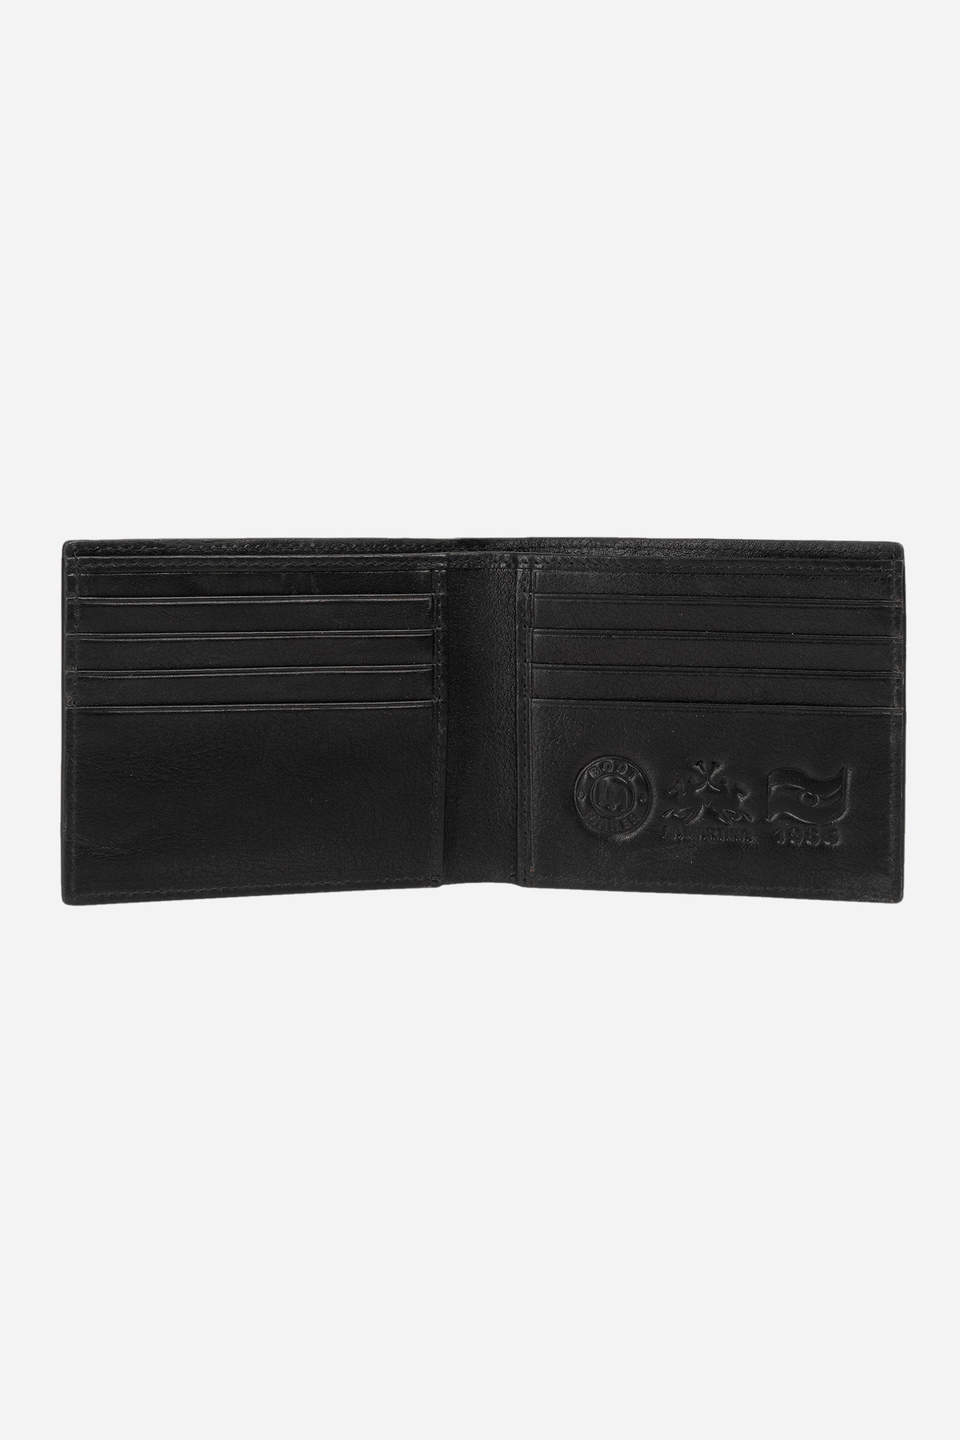 Men's leather wallet - Paulo | La Martina - Official Online Shop